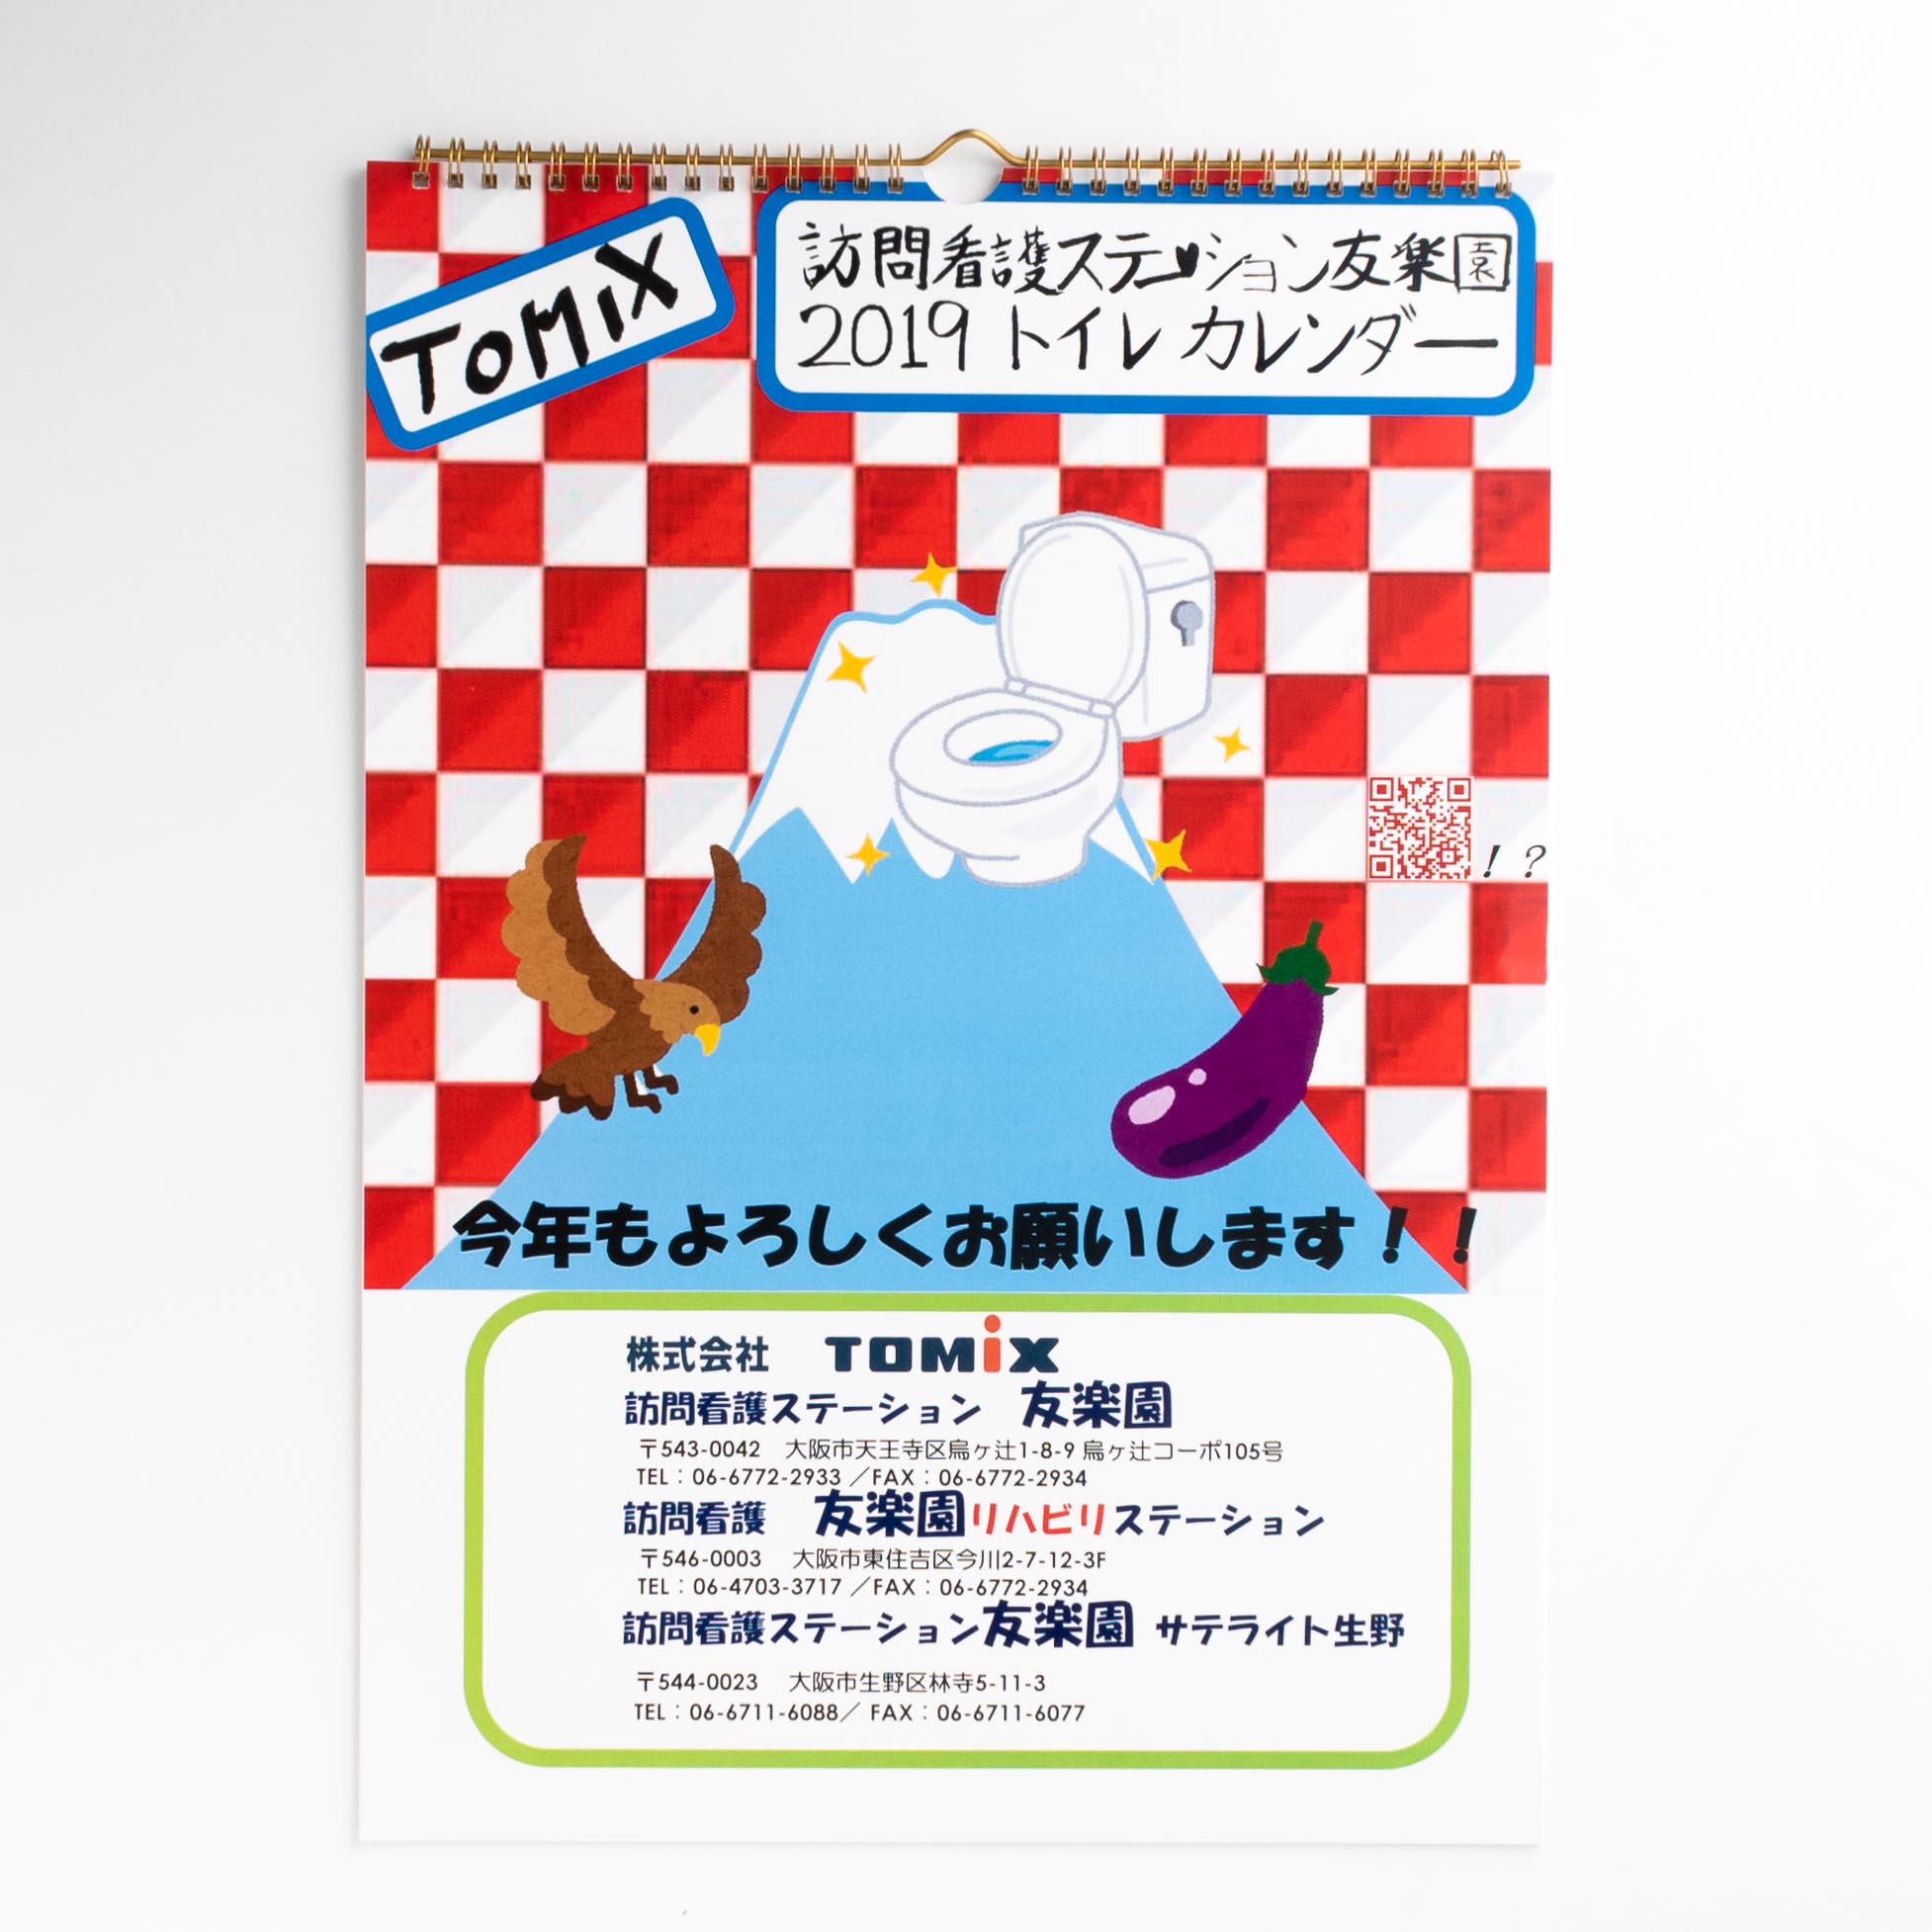 「株式会社TOMIX 様」製作のオリジナルカレンダー